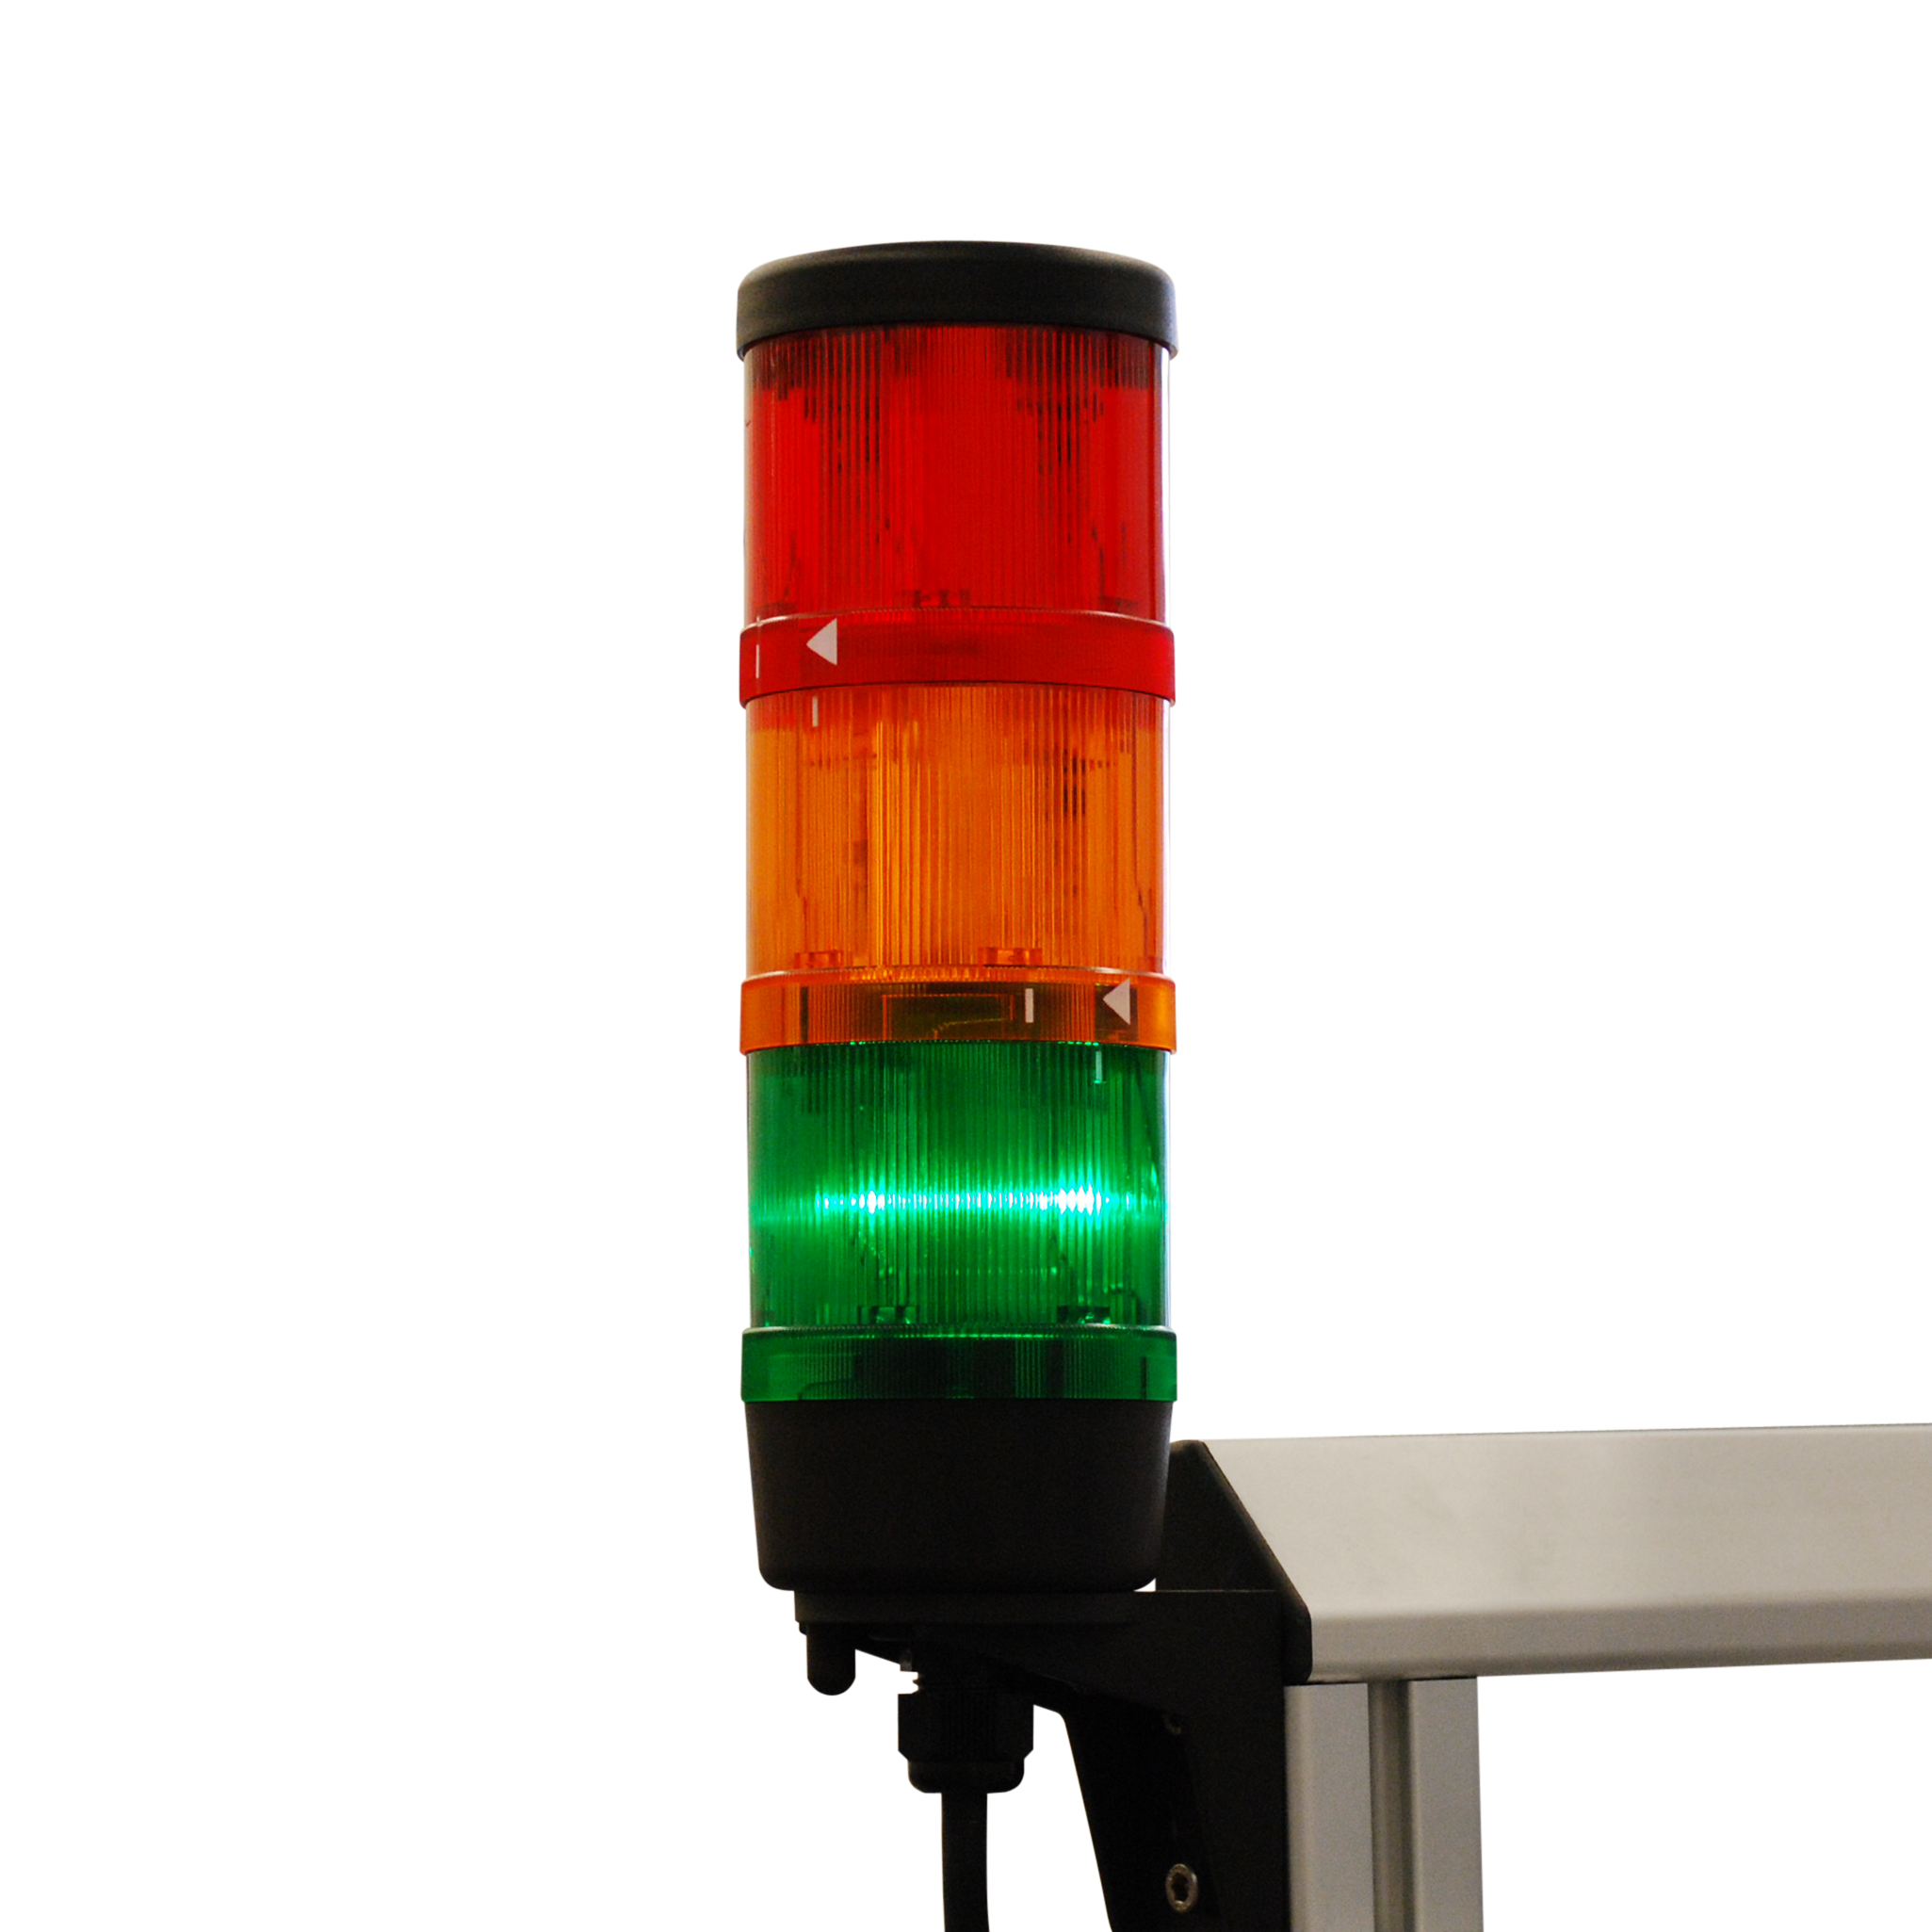 Статусная индикация информирует оператора посредством соответствующего светового сигнала